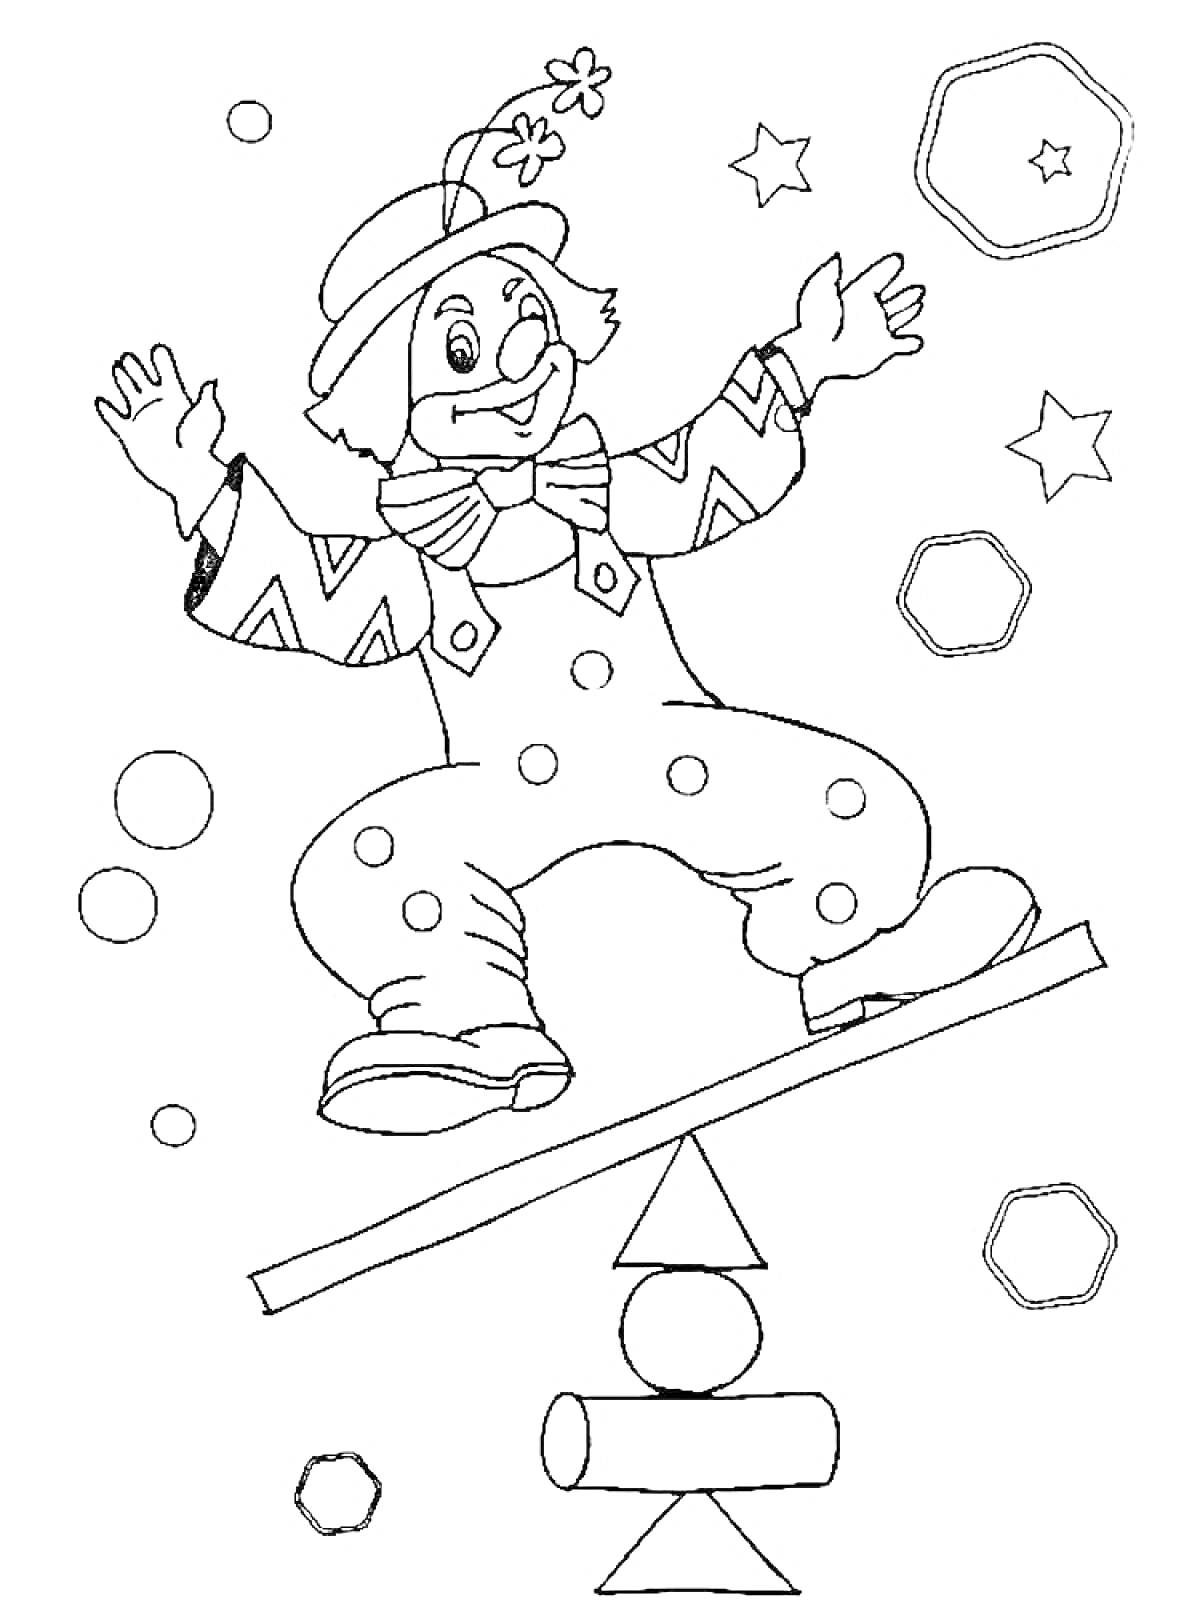 Раскраска Клоун на качелях с геометрическими фигурами